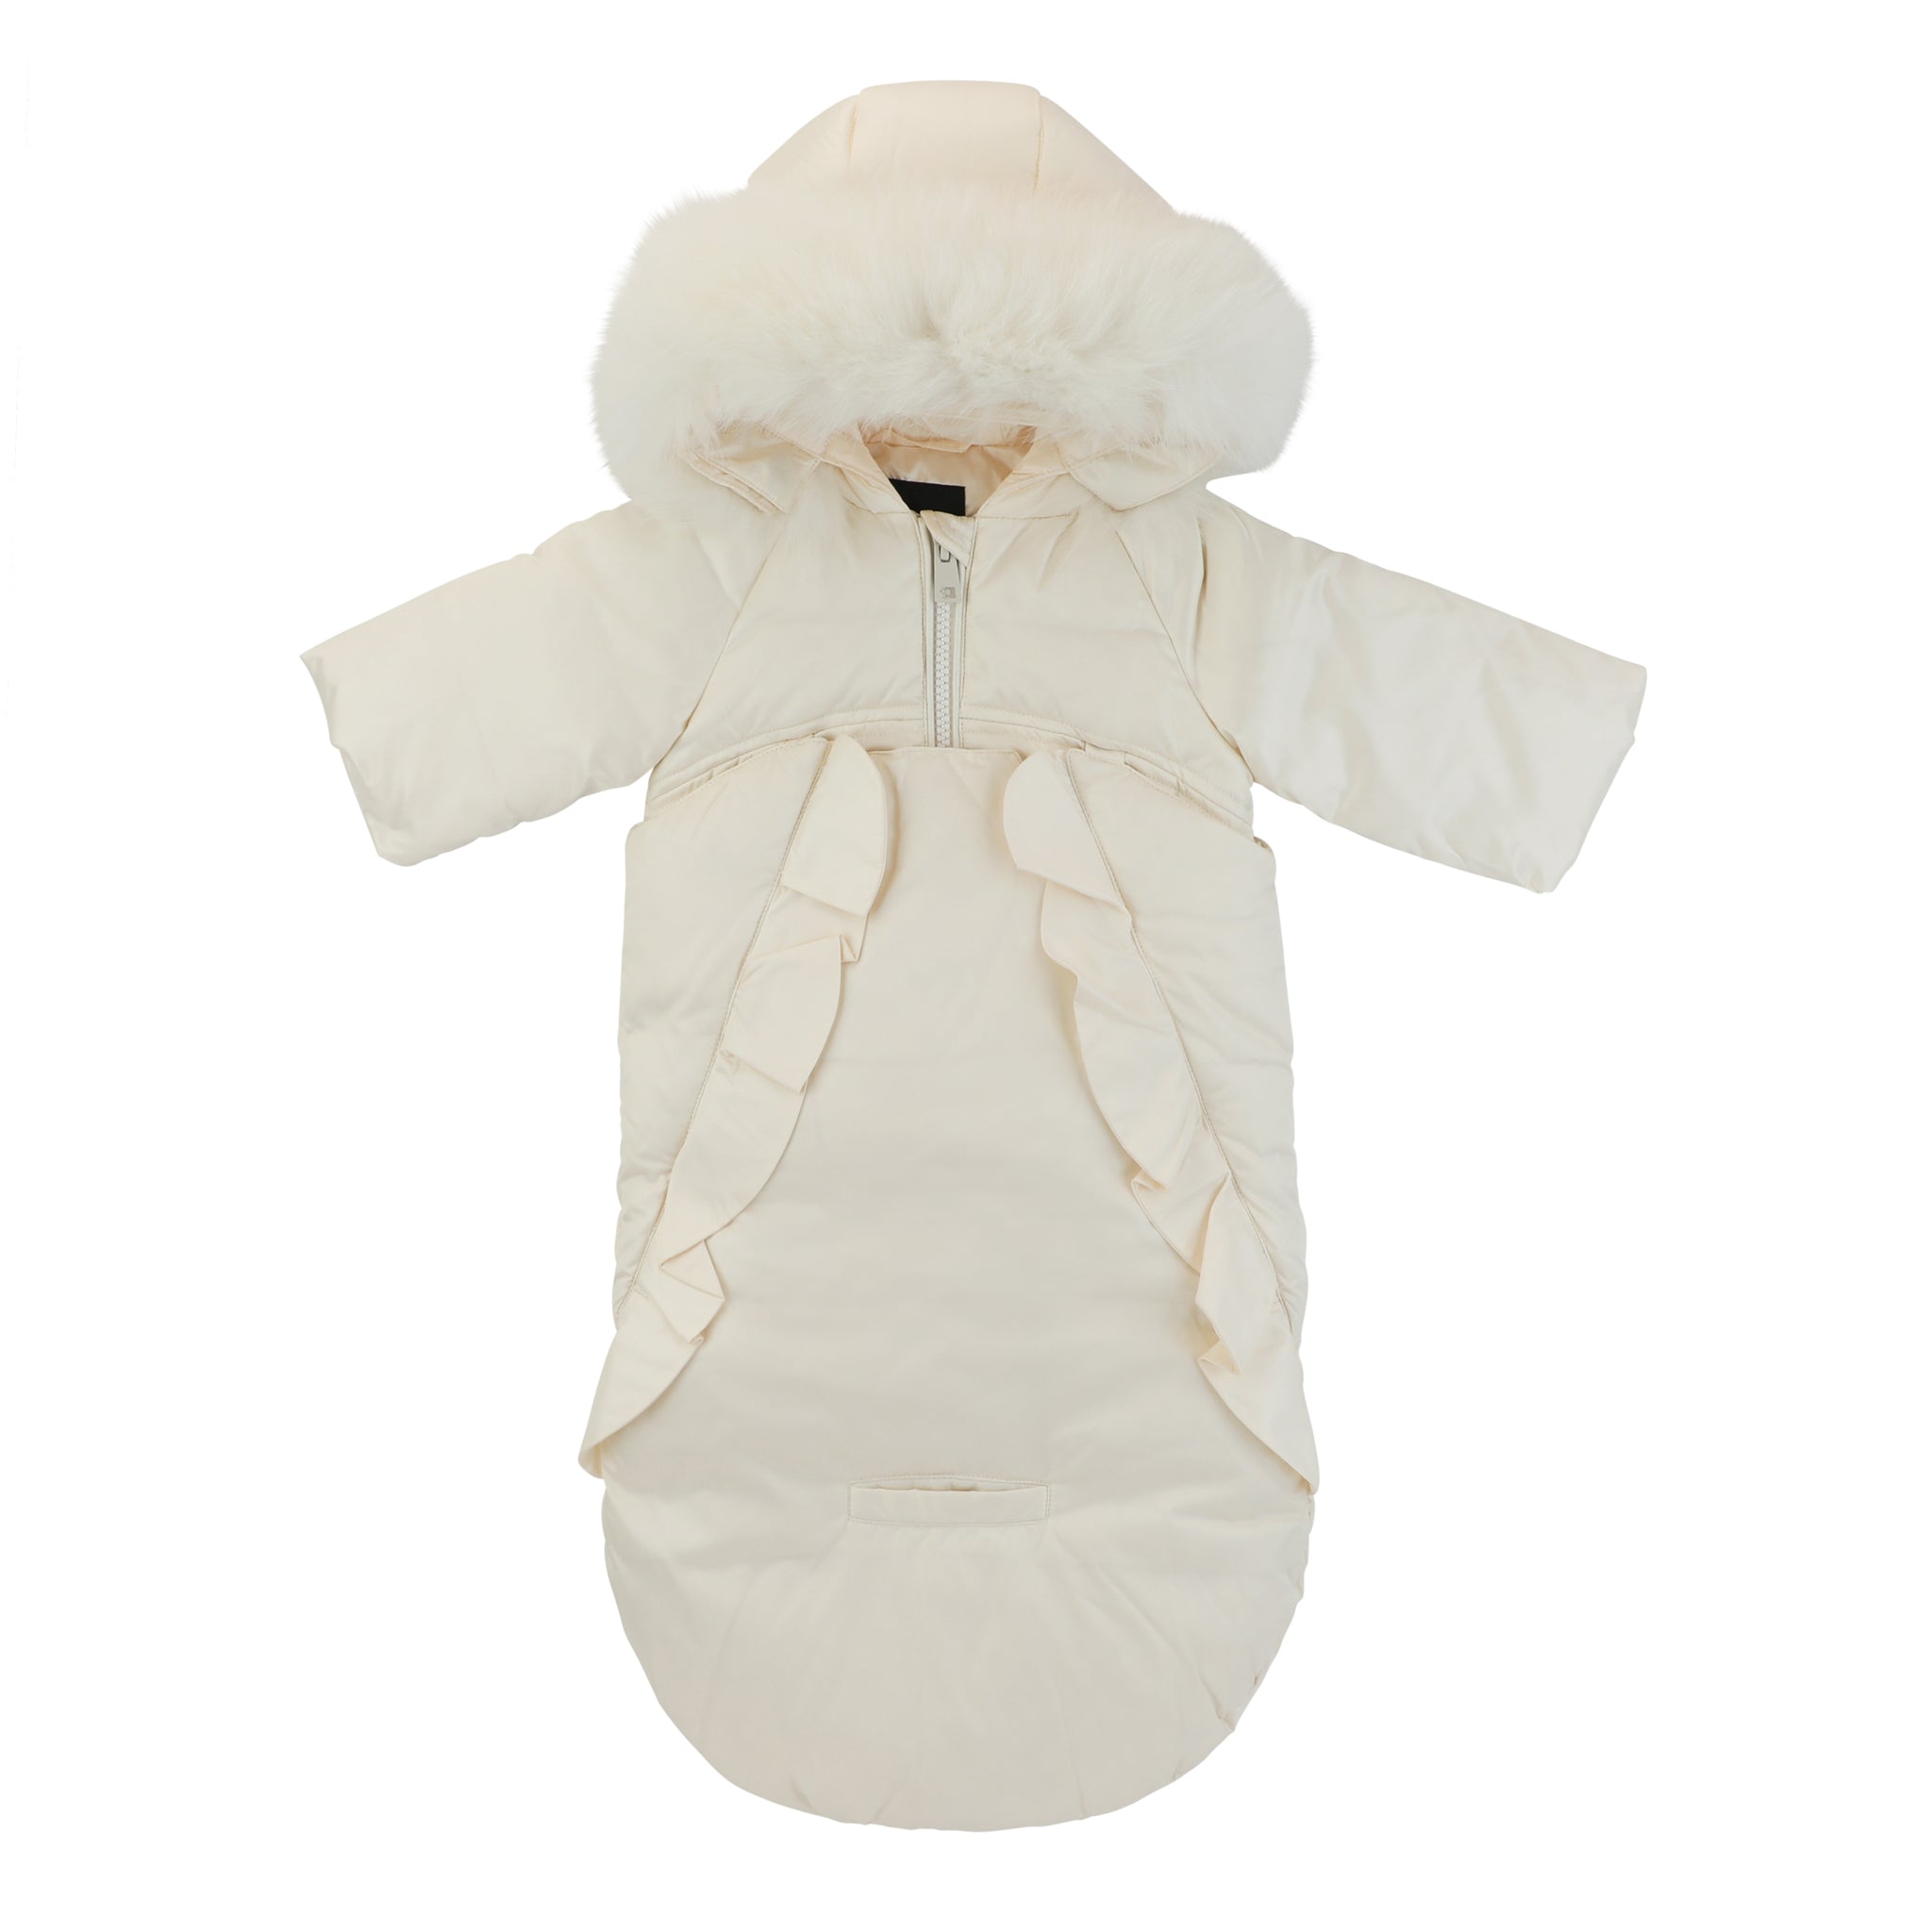 Pramie New Snow Suit - Ivory